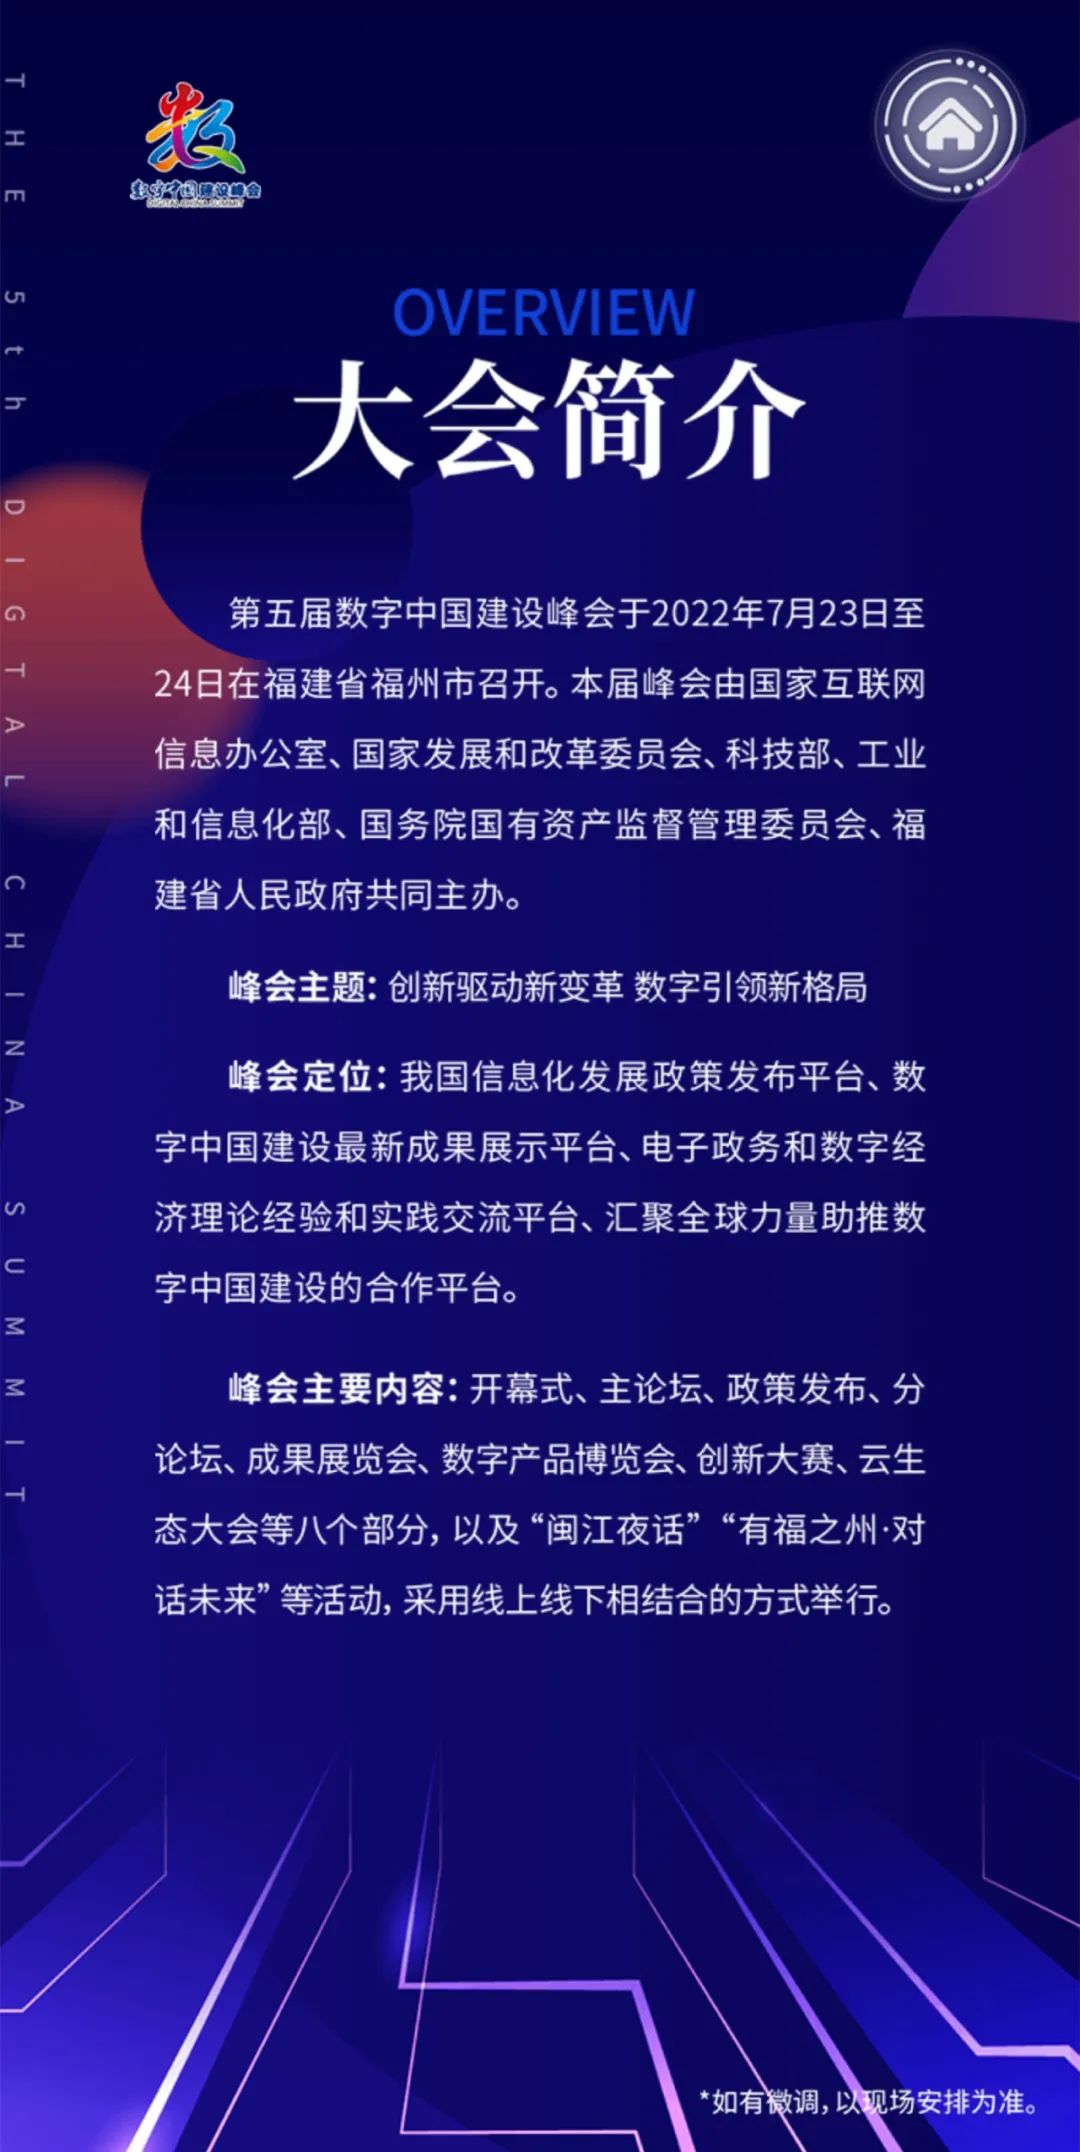 请查收！第五届数字中国建设峰会大会手册上线！